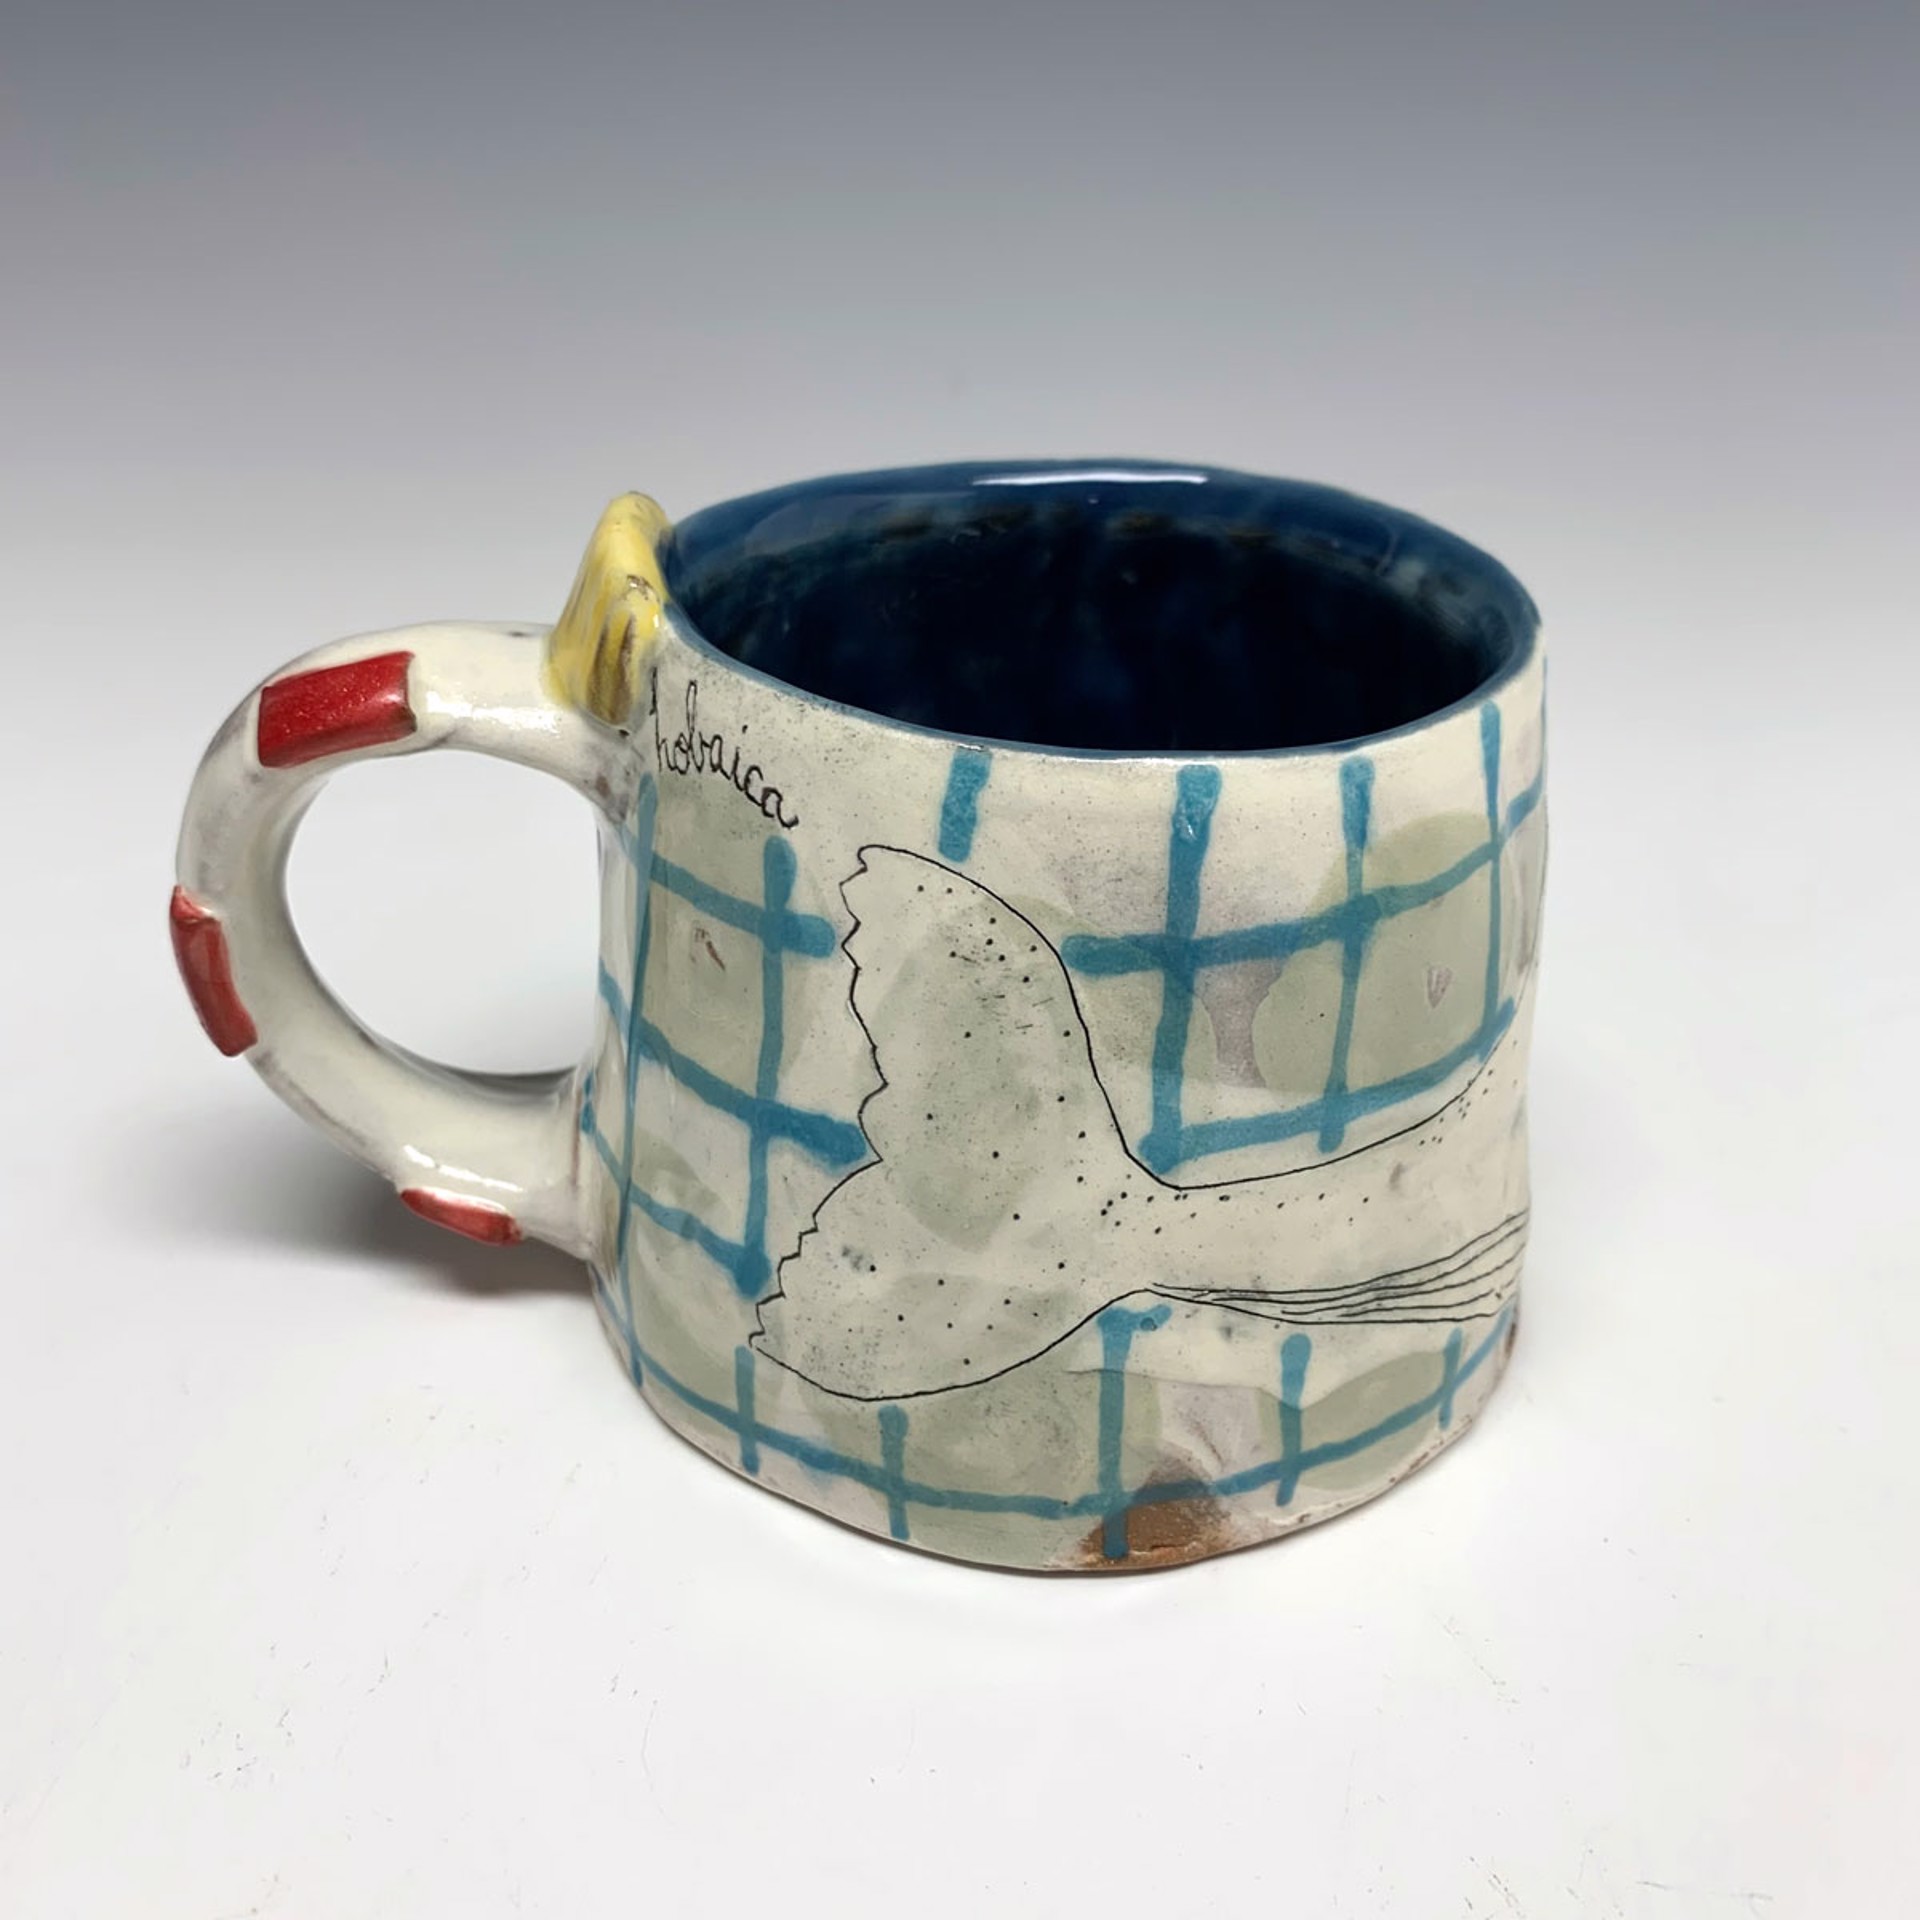 Whale mug by Lynne Hobaica